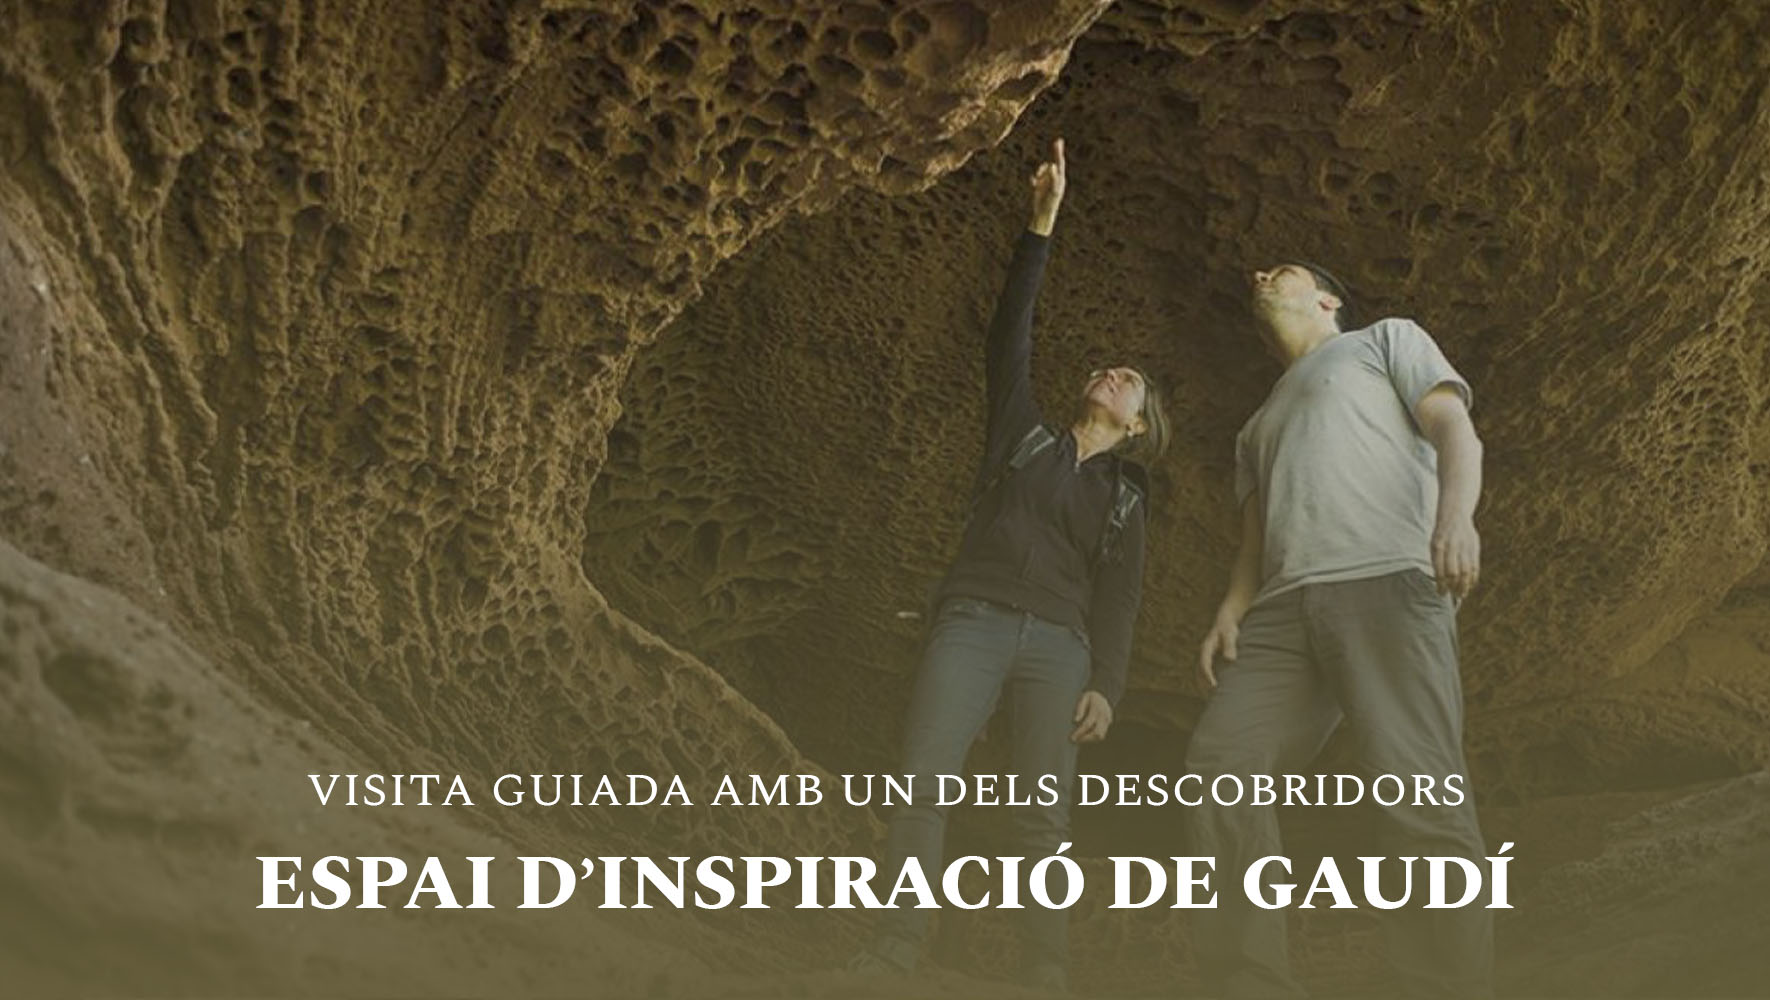 Espai d'Inspiració Gaudí